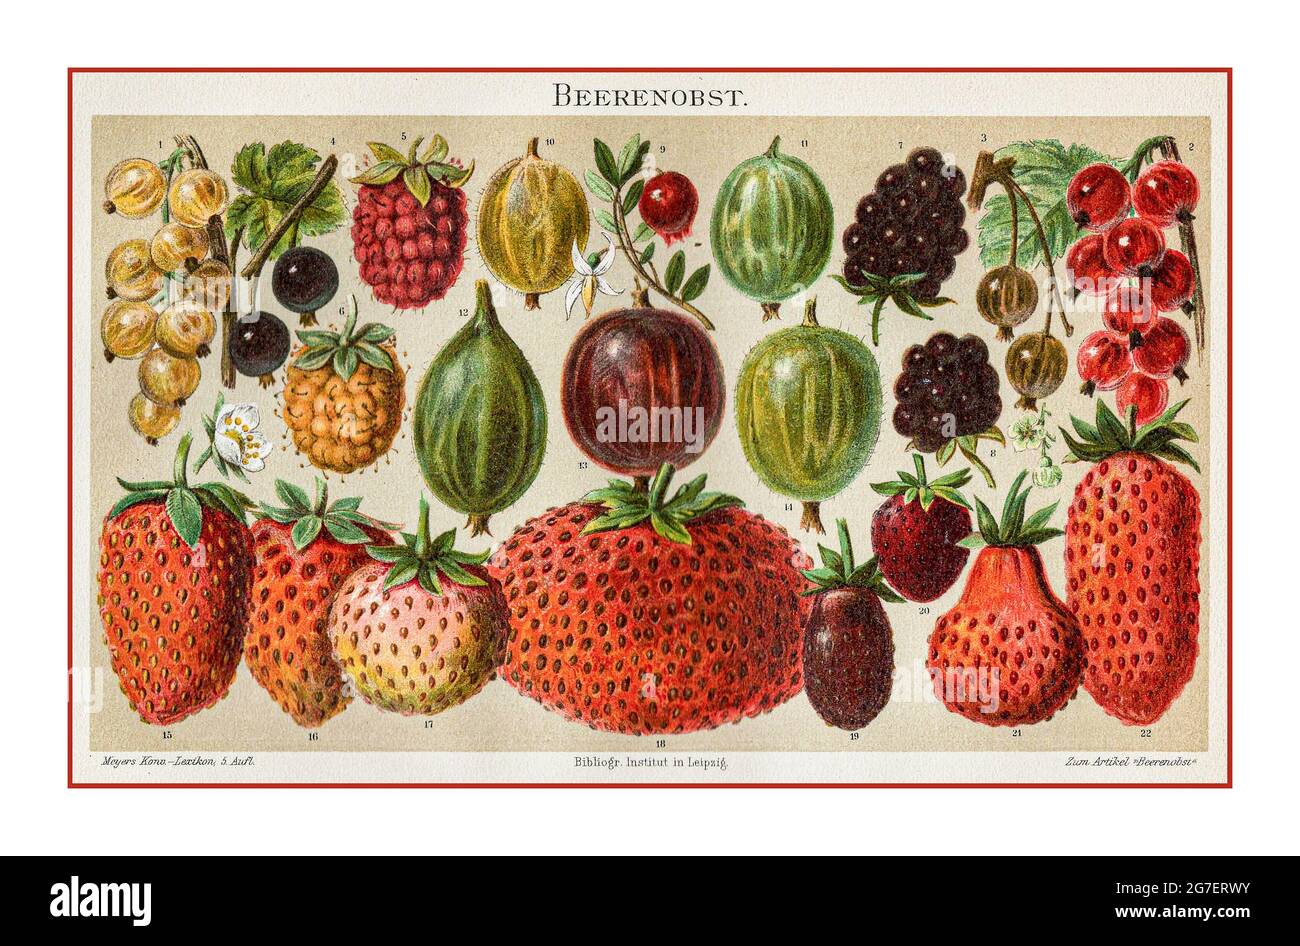 BAYAS LEYOGRAFICA DEL 1800 ARTICULACION DE FRUTOS DE JARDÍN BOTANO VINTAGE, BERANAS, DIFERENTES VARIEDADES, 1-4 CURANT (Ribes), 5-6 frambuesa (Rubus idaeus), 6-8 blackberry (Rubus fruticosus), 9 arándanos (Vaccinium oxycosus), 10-14 gooseberry (Ribes uva-crispa), 15-22 litografía de Meyer, Fragaria), 1880 Foto de stock